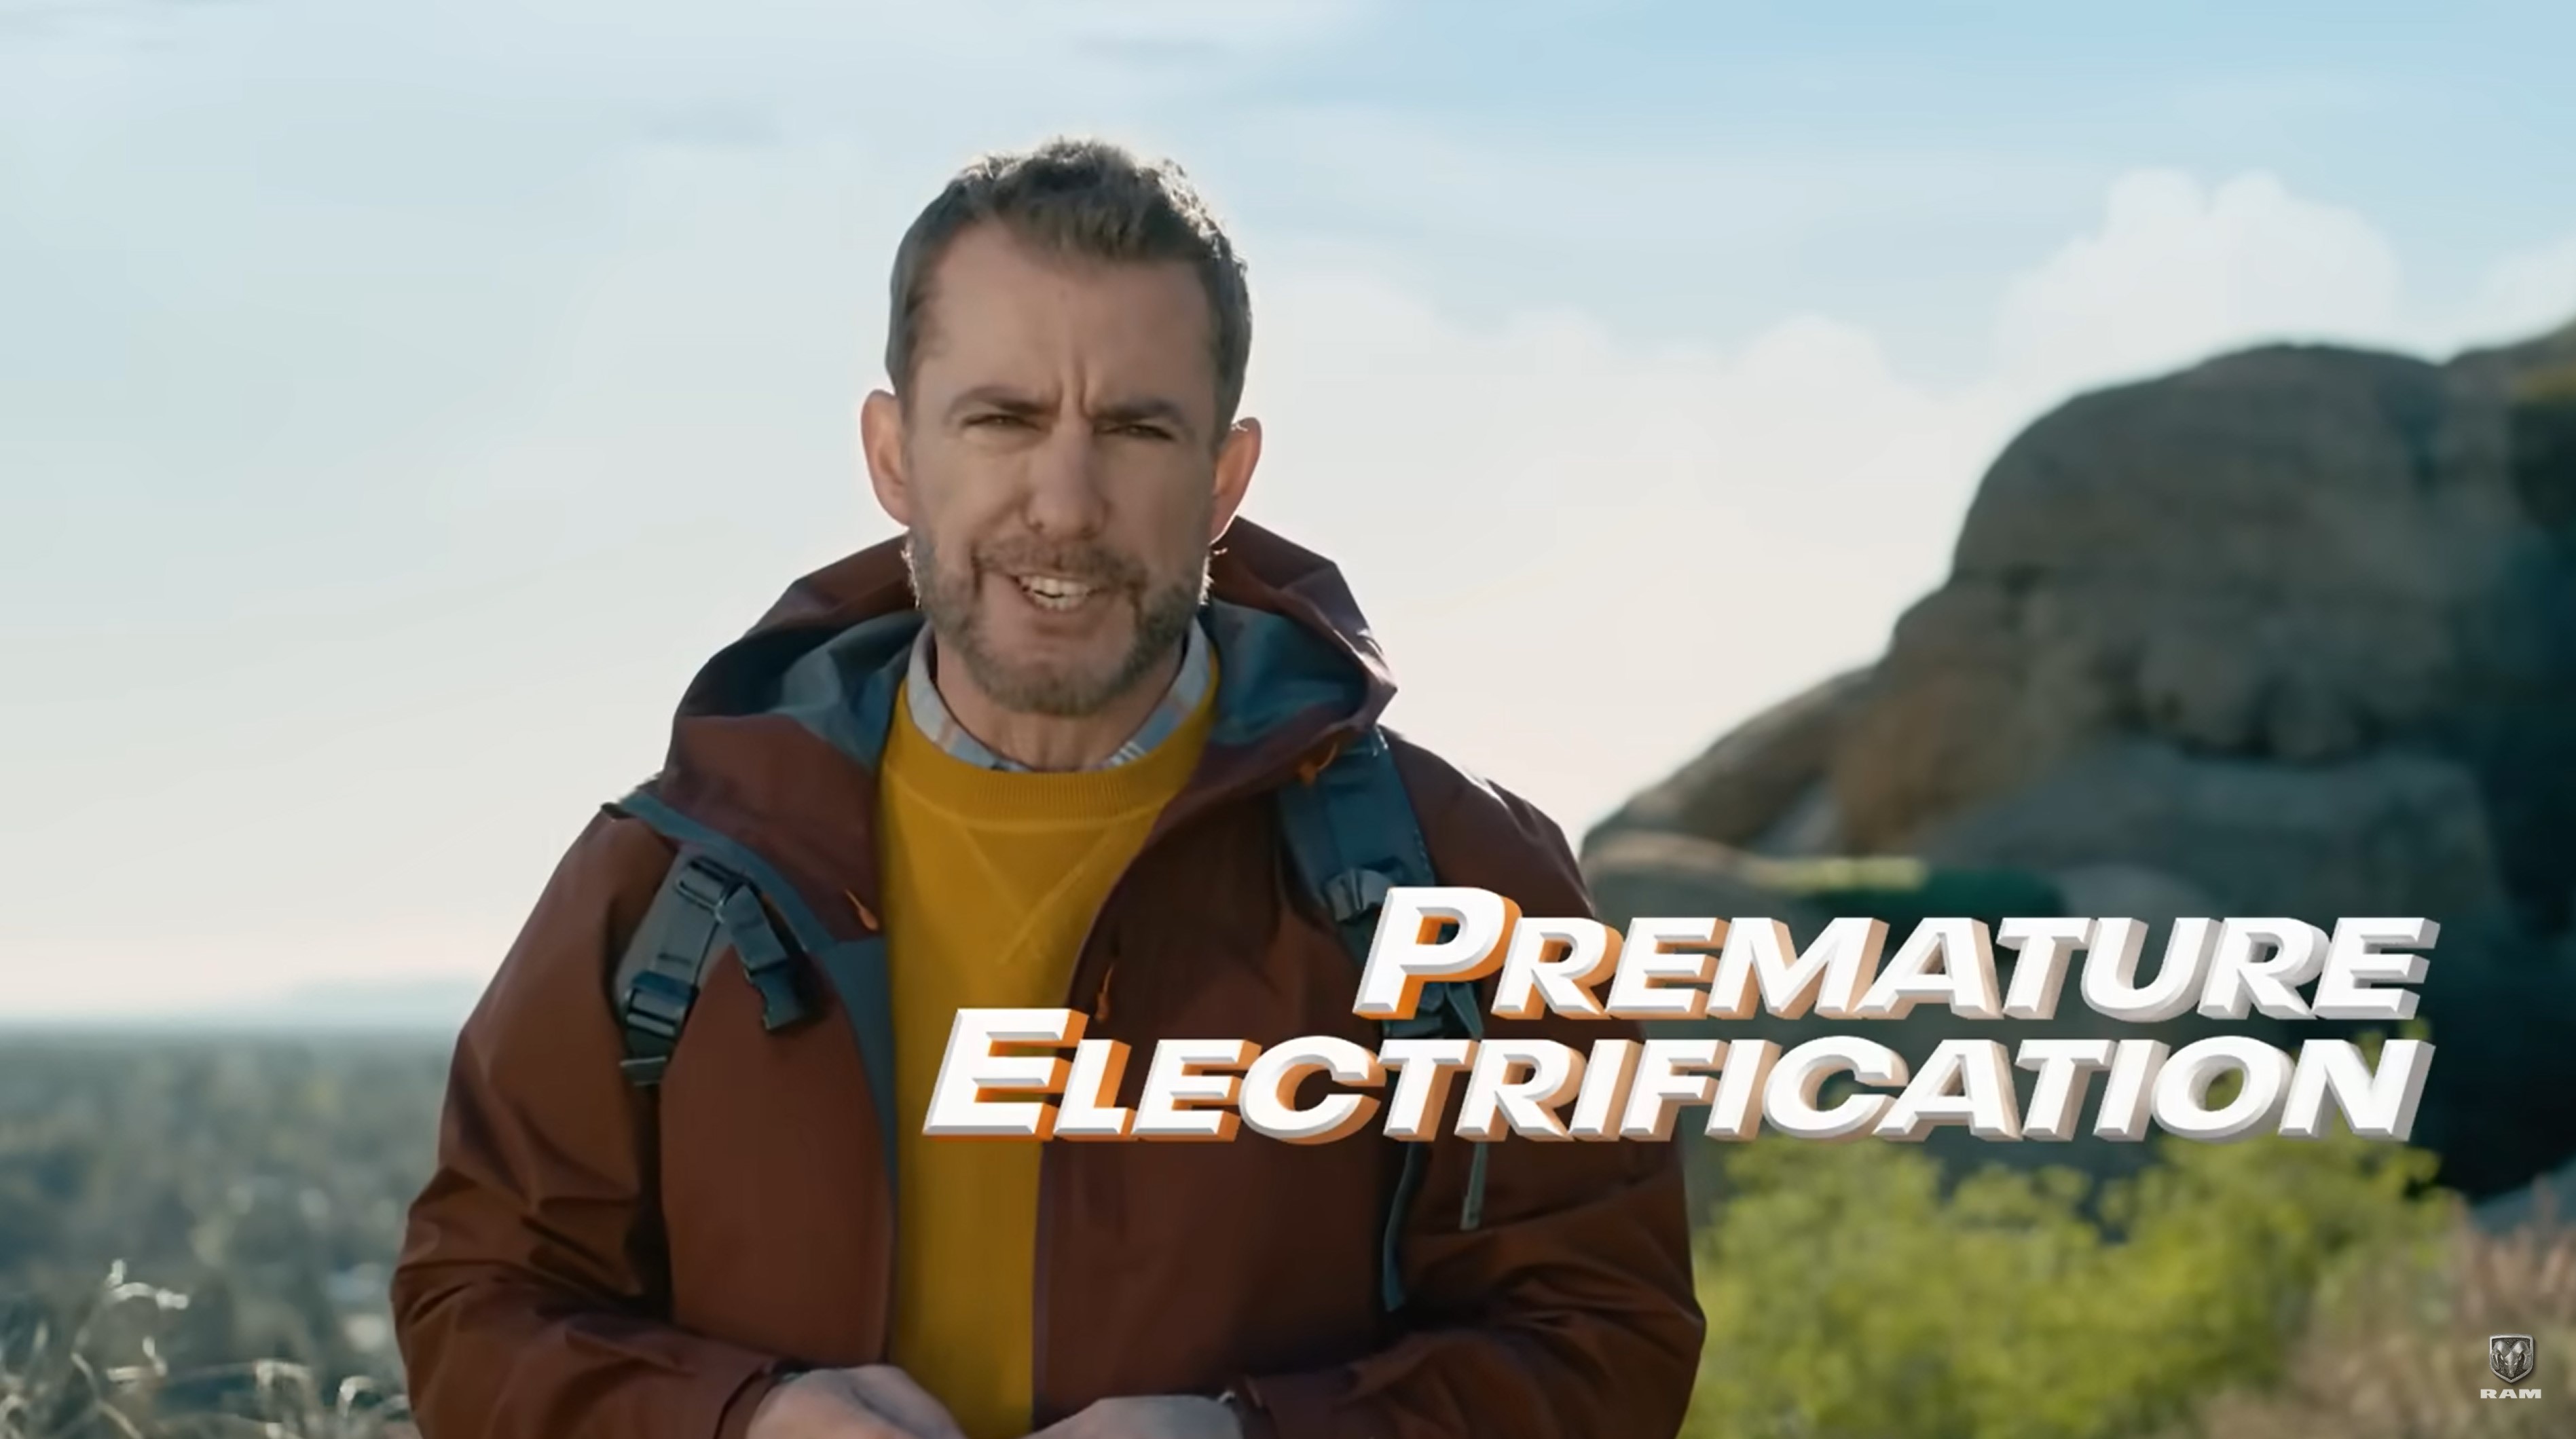 Ram's 'Premature Electrification'